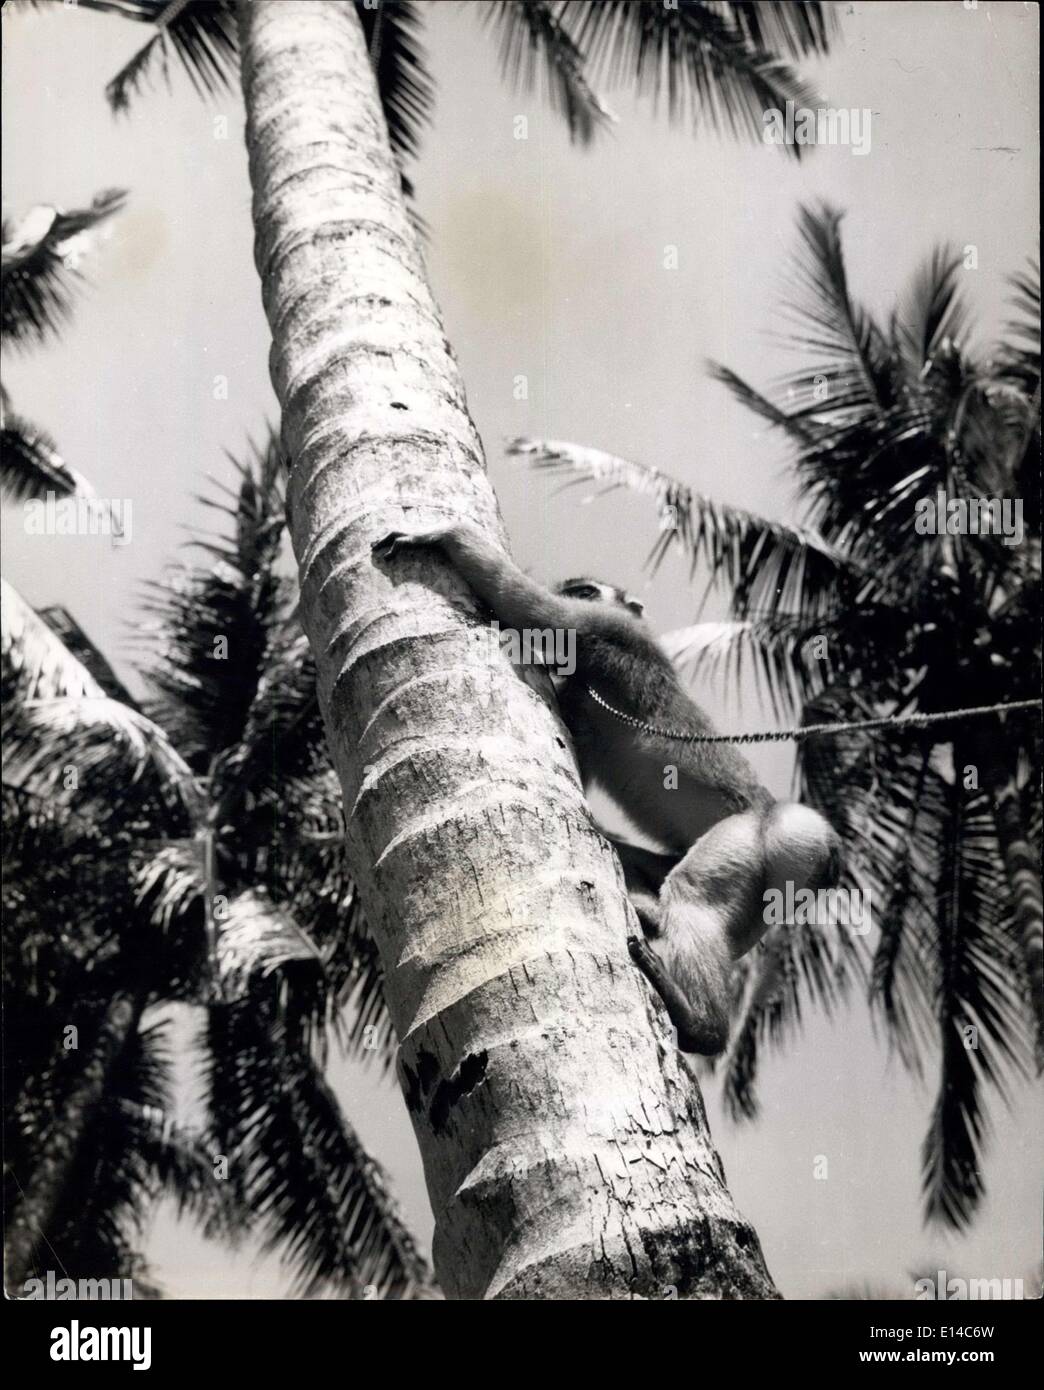 17 avril 2012 - vers le haut, la tige de palmier se ferme et se balance dans la brise, mais le singe est utilisé pour la vie de cime, Et se raccroche tenacieusement aux mains et aux pieds comme elle se rend au sommet où sont les noix.Madame Monkey travaille pour elle vivant à Sumatra: En tant que collectrice de noix de coco, elle gagne le salaire d'une travailleuse humaine: Sumatra est une île pleine de singe de toutes formes, couleurs et tailles. Les autochtones ont longtemps ken avantage de cela et forment des singes captifs femelles pour faire une journée utile de travail pour leur garder Banque D'Images